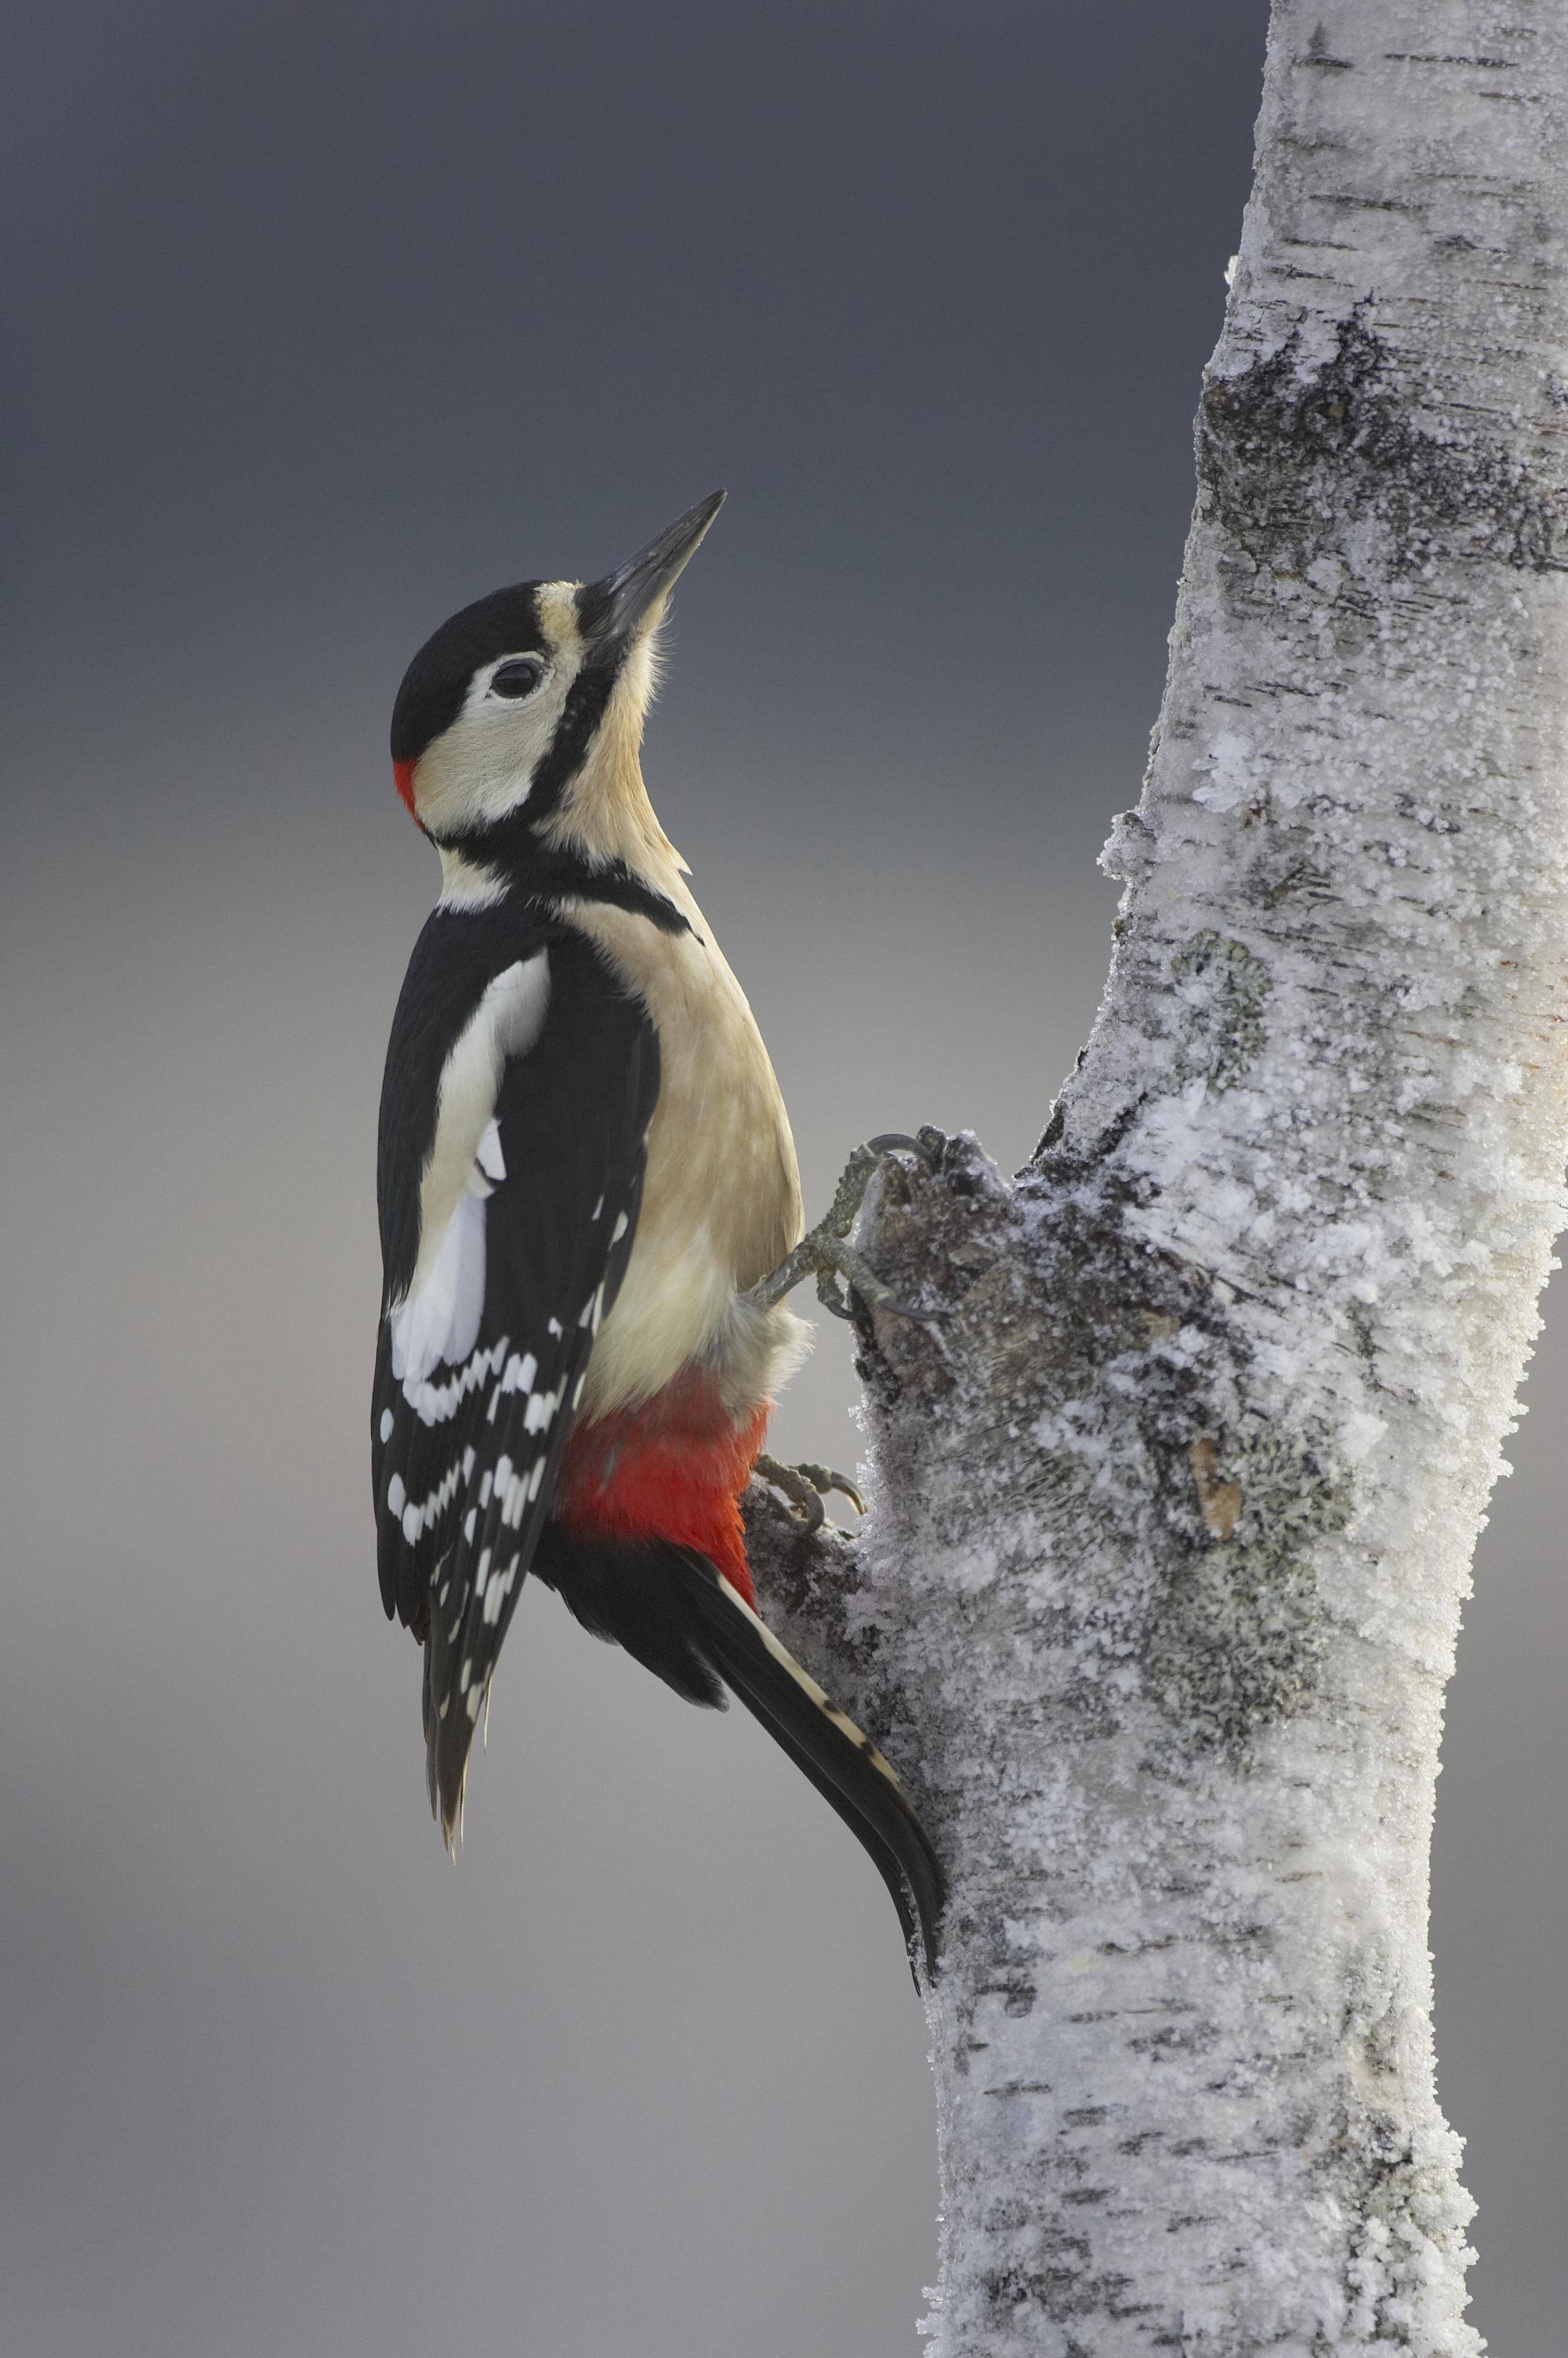 Wild Scotland wildlife and adventure tourism | Birds | Inland Birds ...